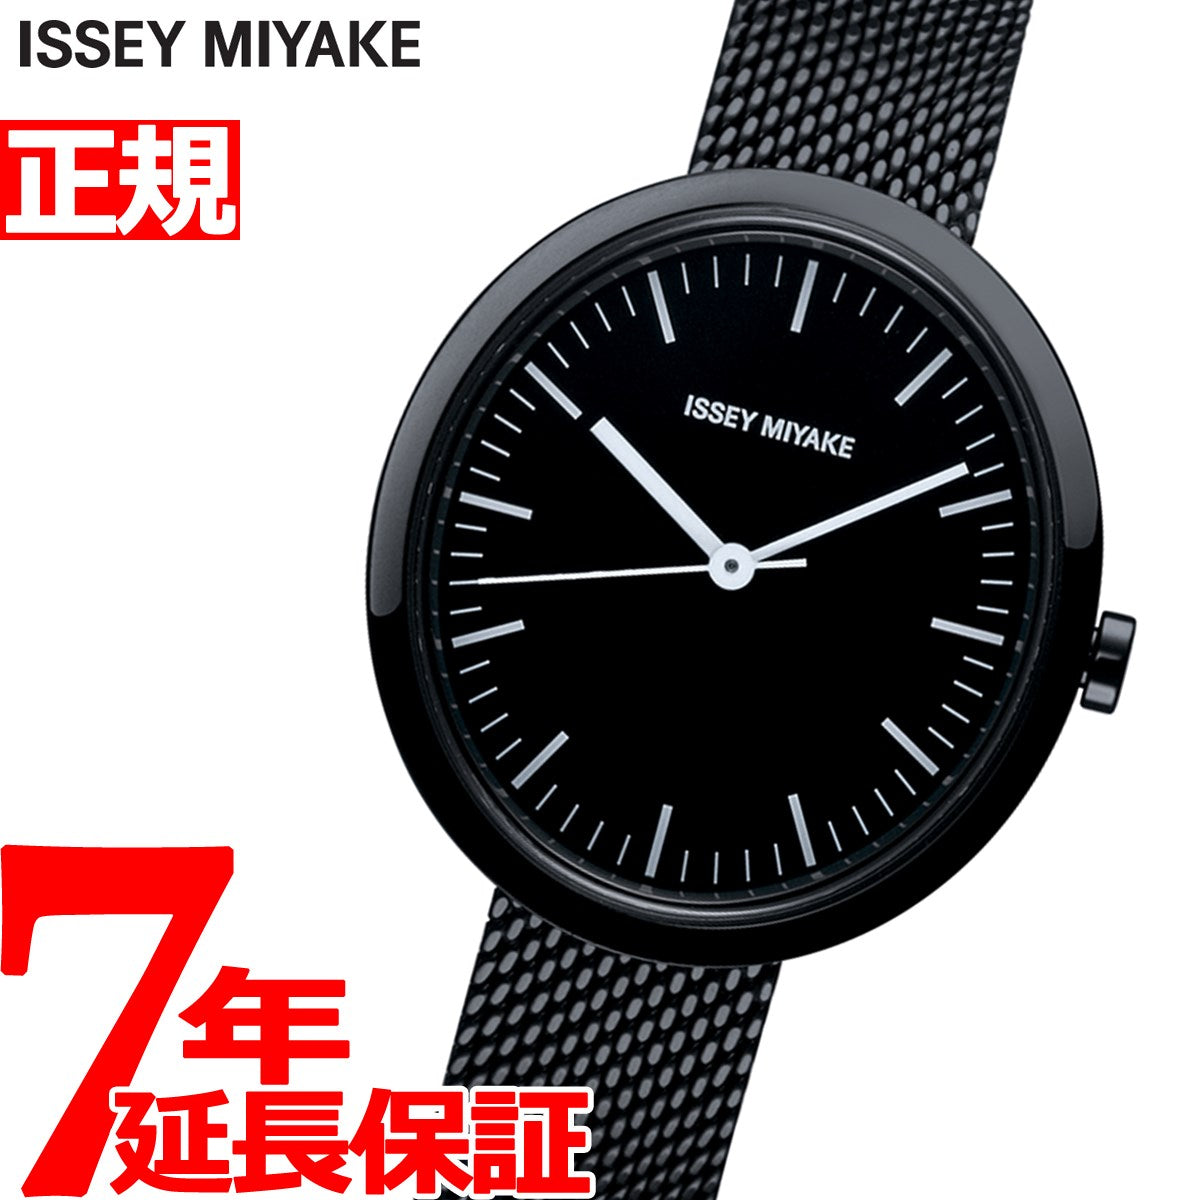 イッセイミヤケ ISSEY MIYAKE 腕時計 メンズ レディース ELLIPSE エリプス ミニ 深澤直人デザイン NYAR002